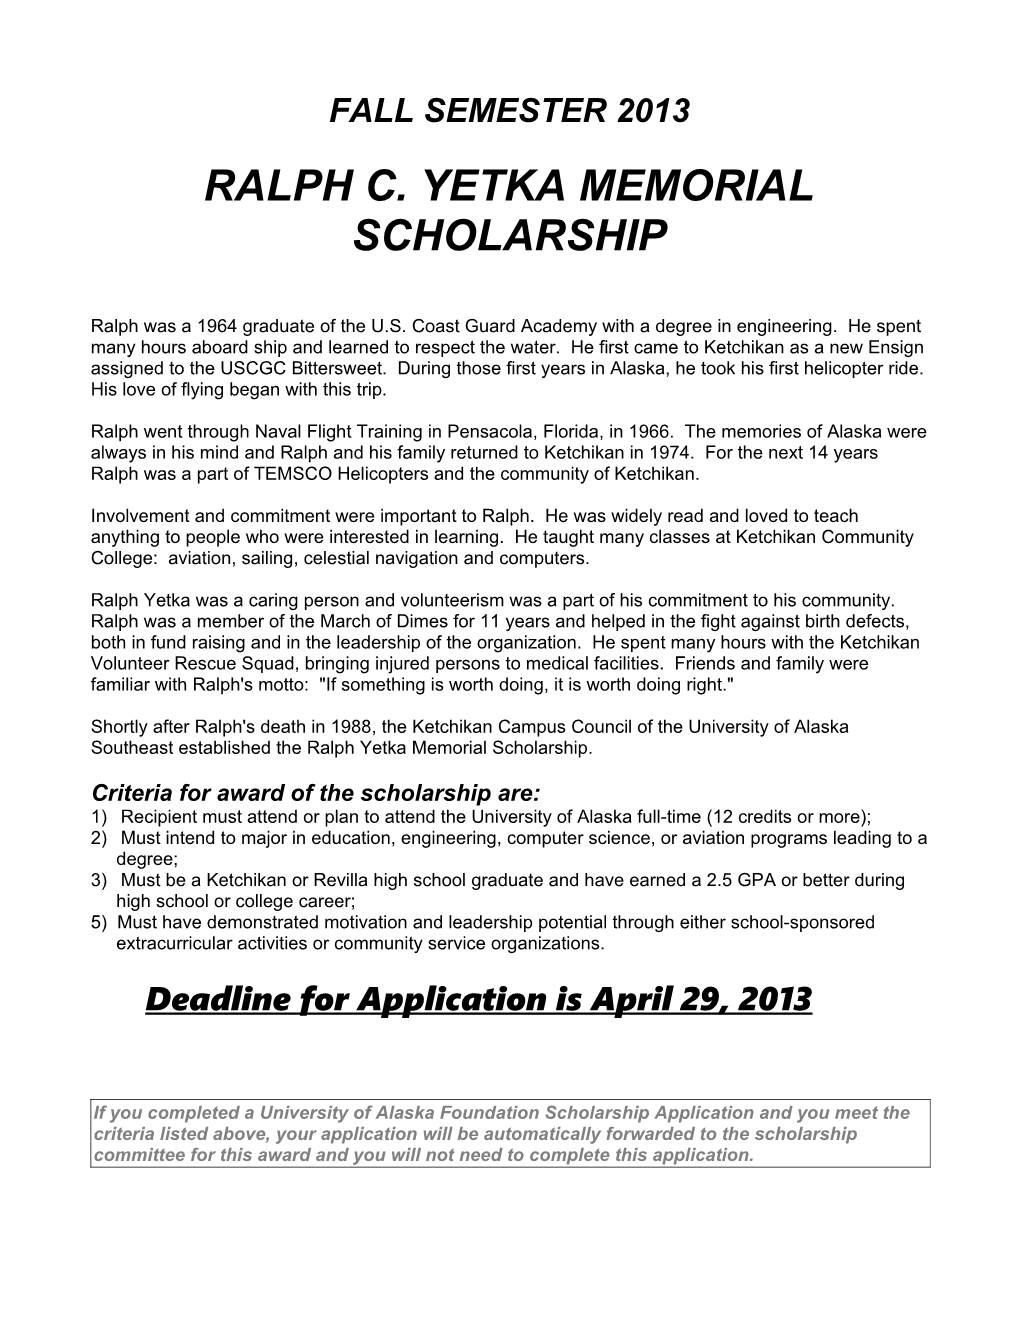 Ralph C. Yetka Memorial Scholarship